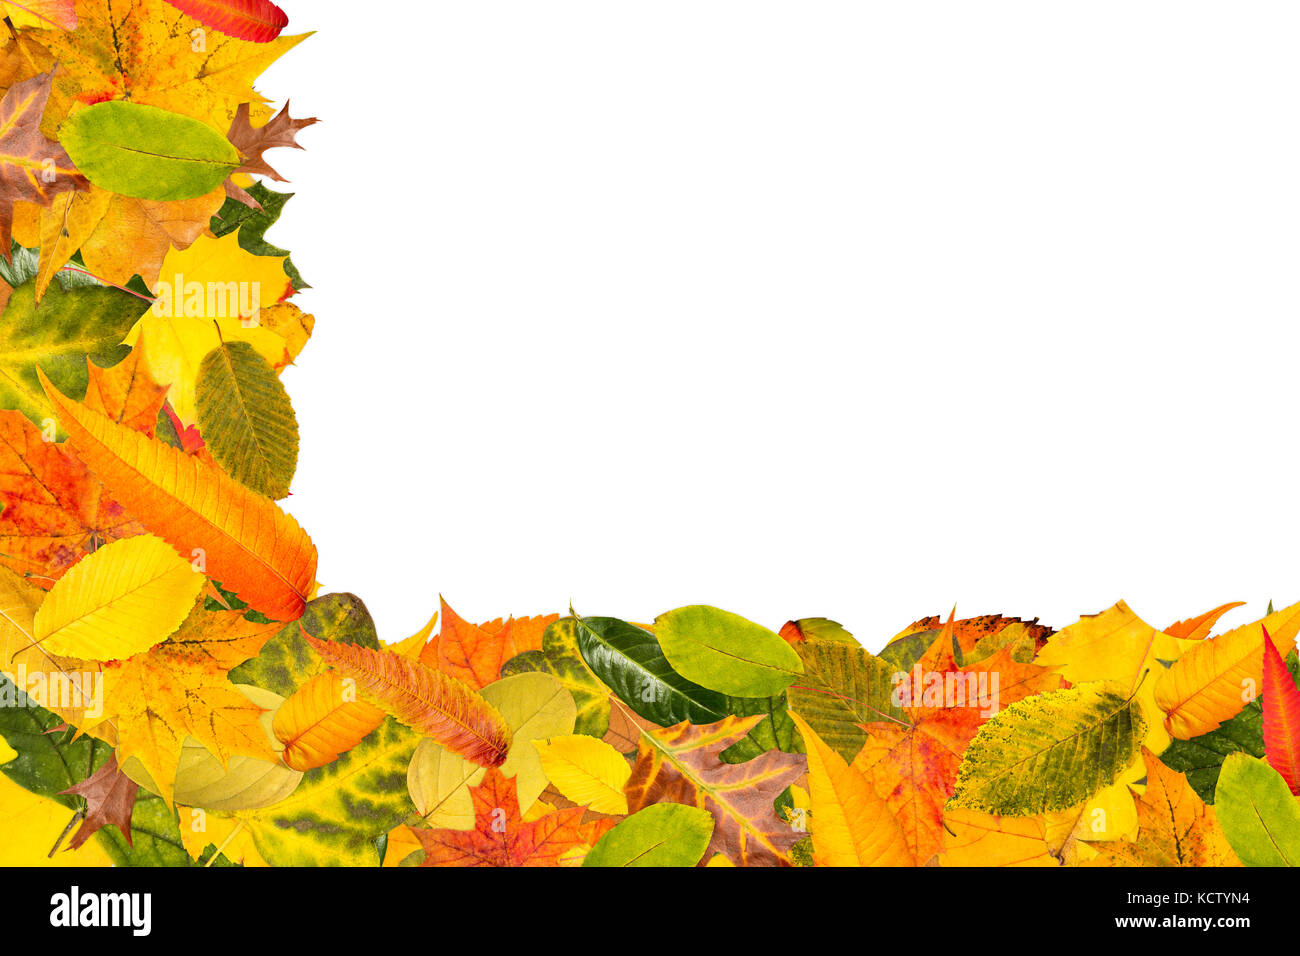 Viele verschiedene Blätter im Herbst als Rahmen für den Herbst Hintergrund Stockfoto